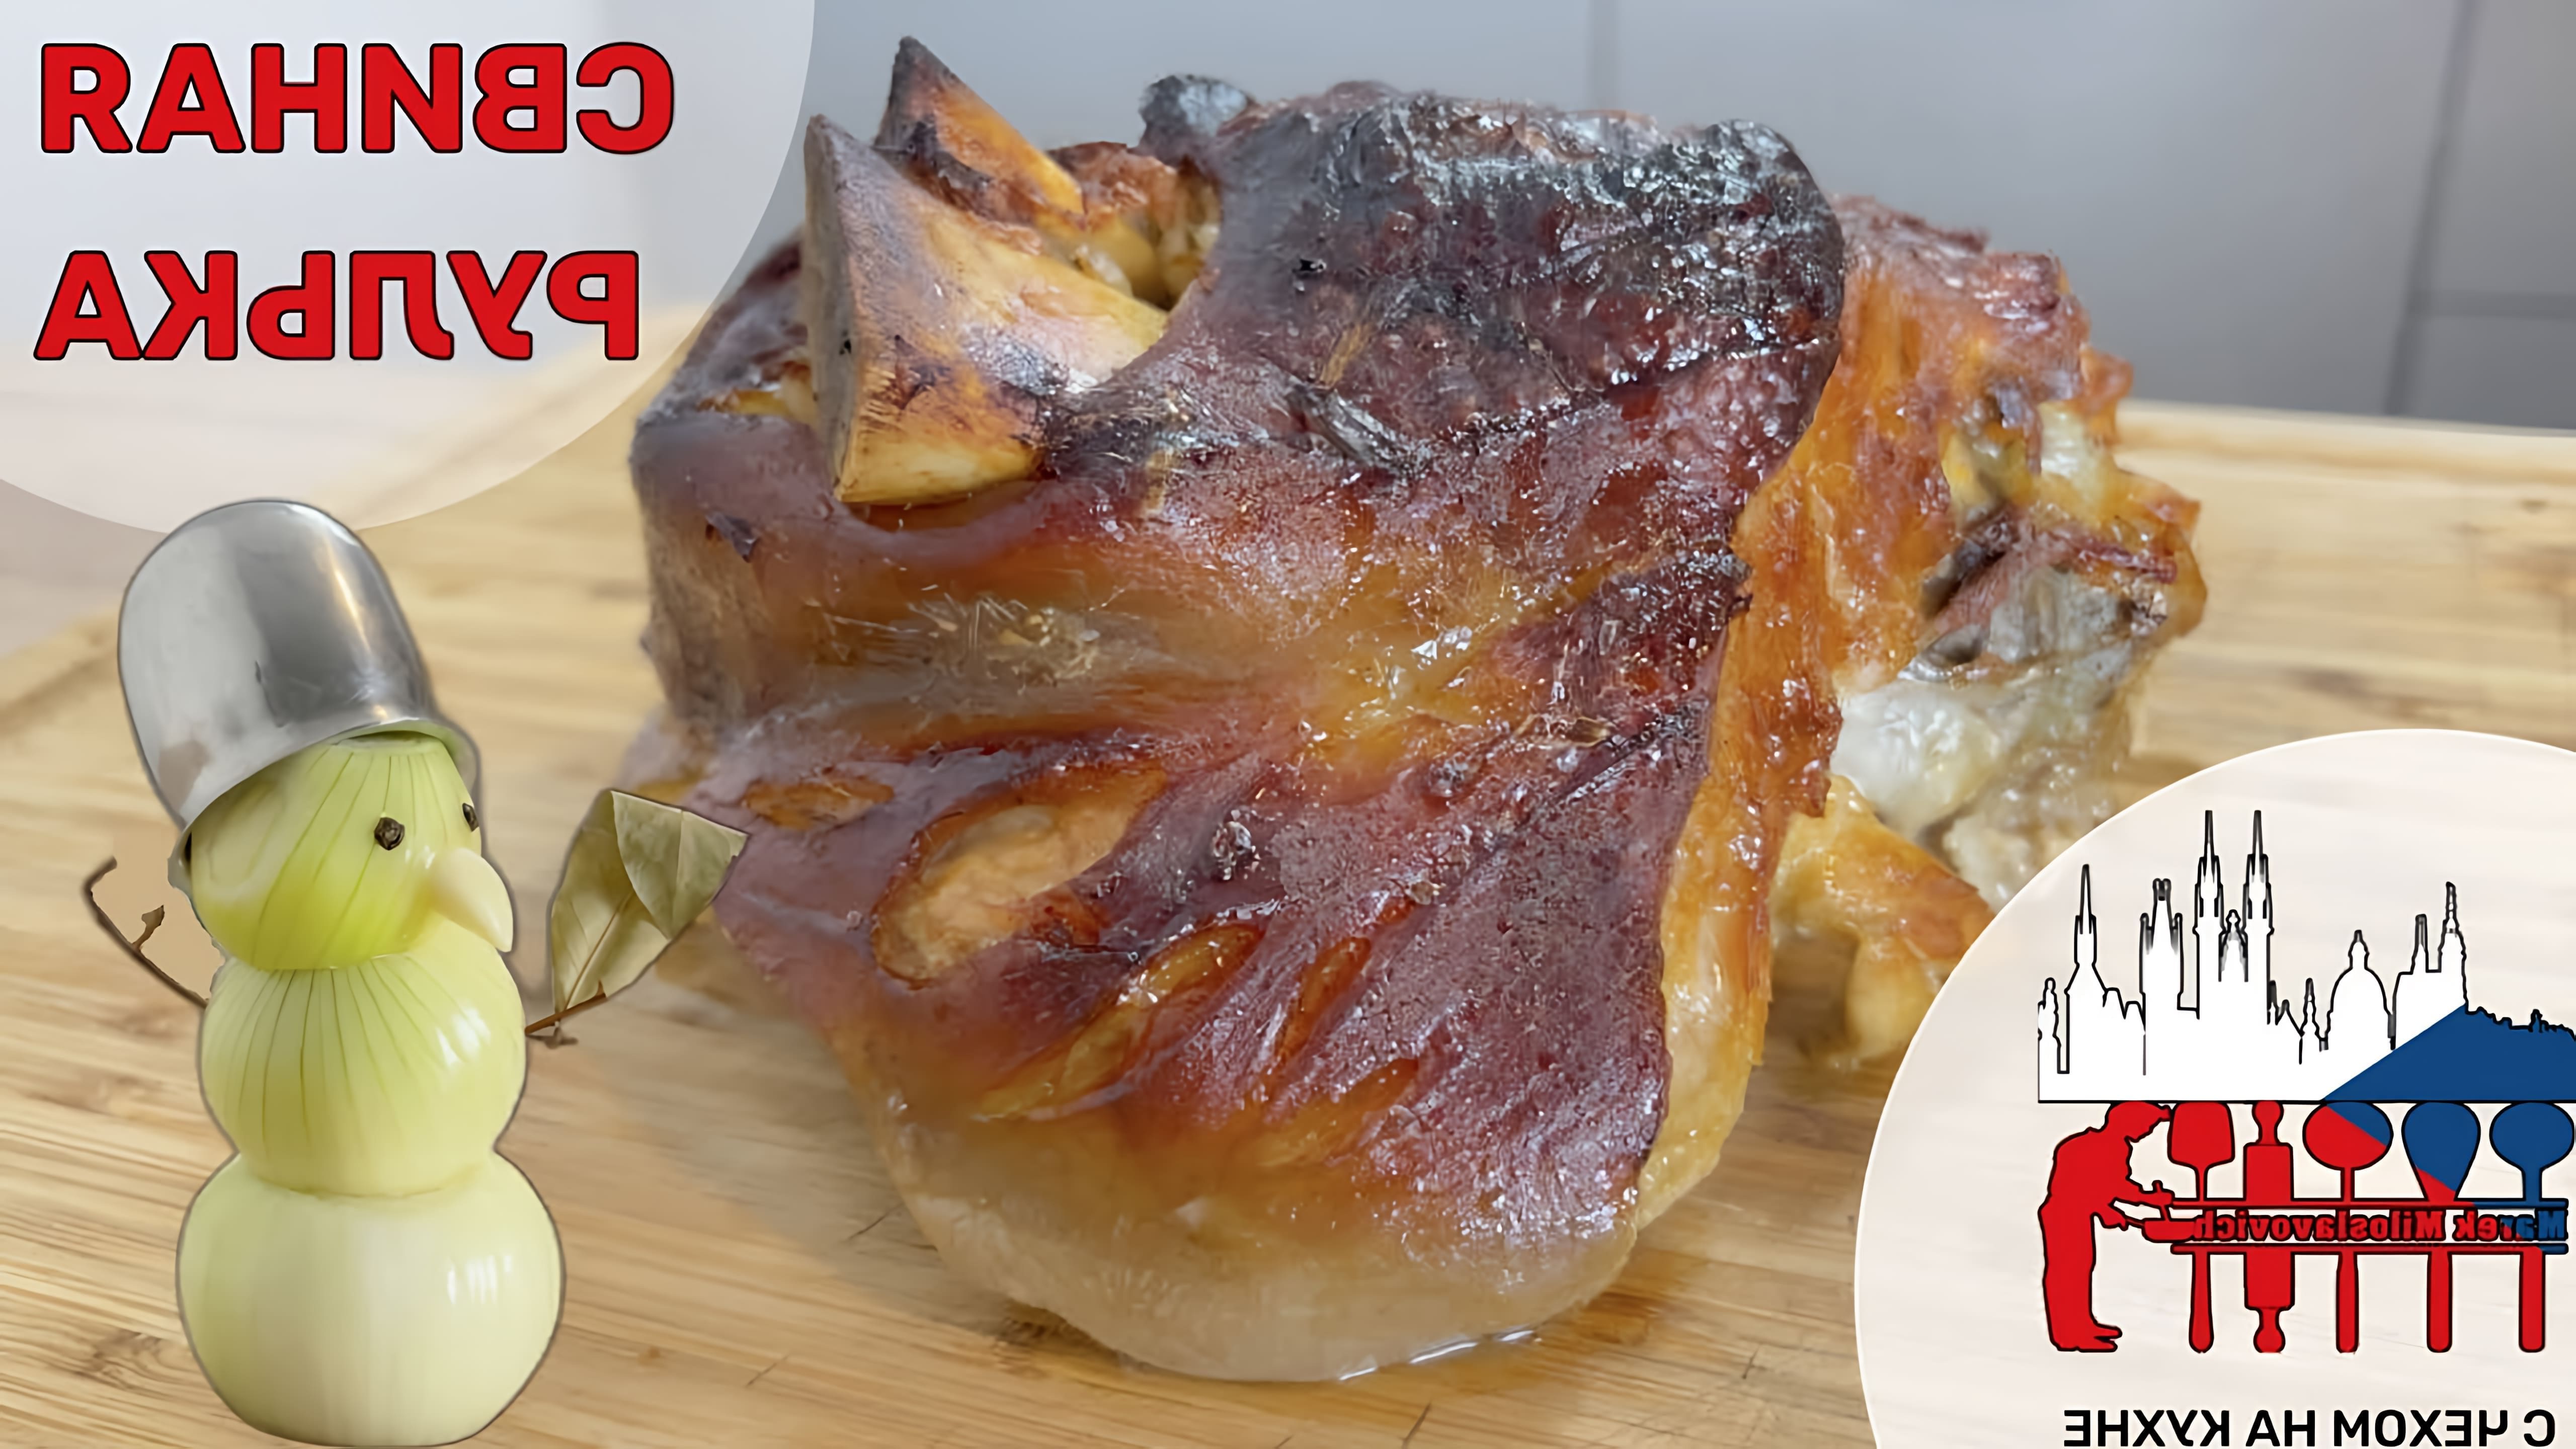 В этом видео Марик Славич, чешский повар, показывает процесс приготовления традиционного чешского блюда - свиной рульки, также известной как вепрево колено